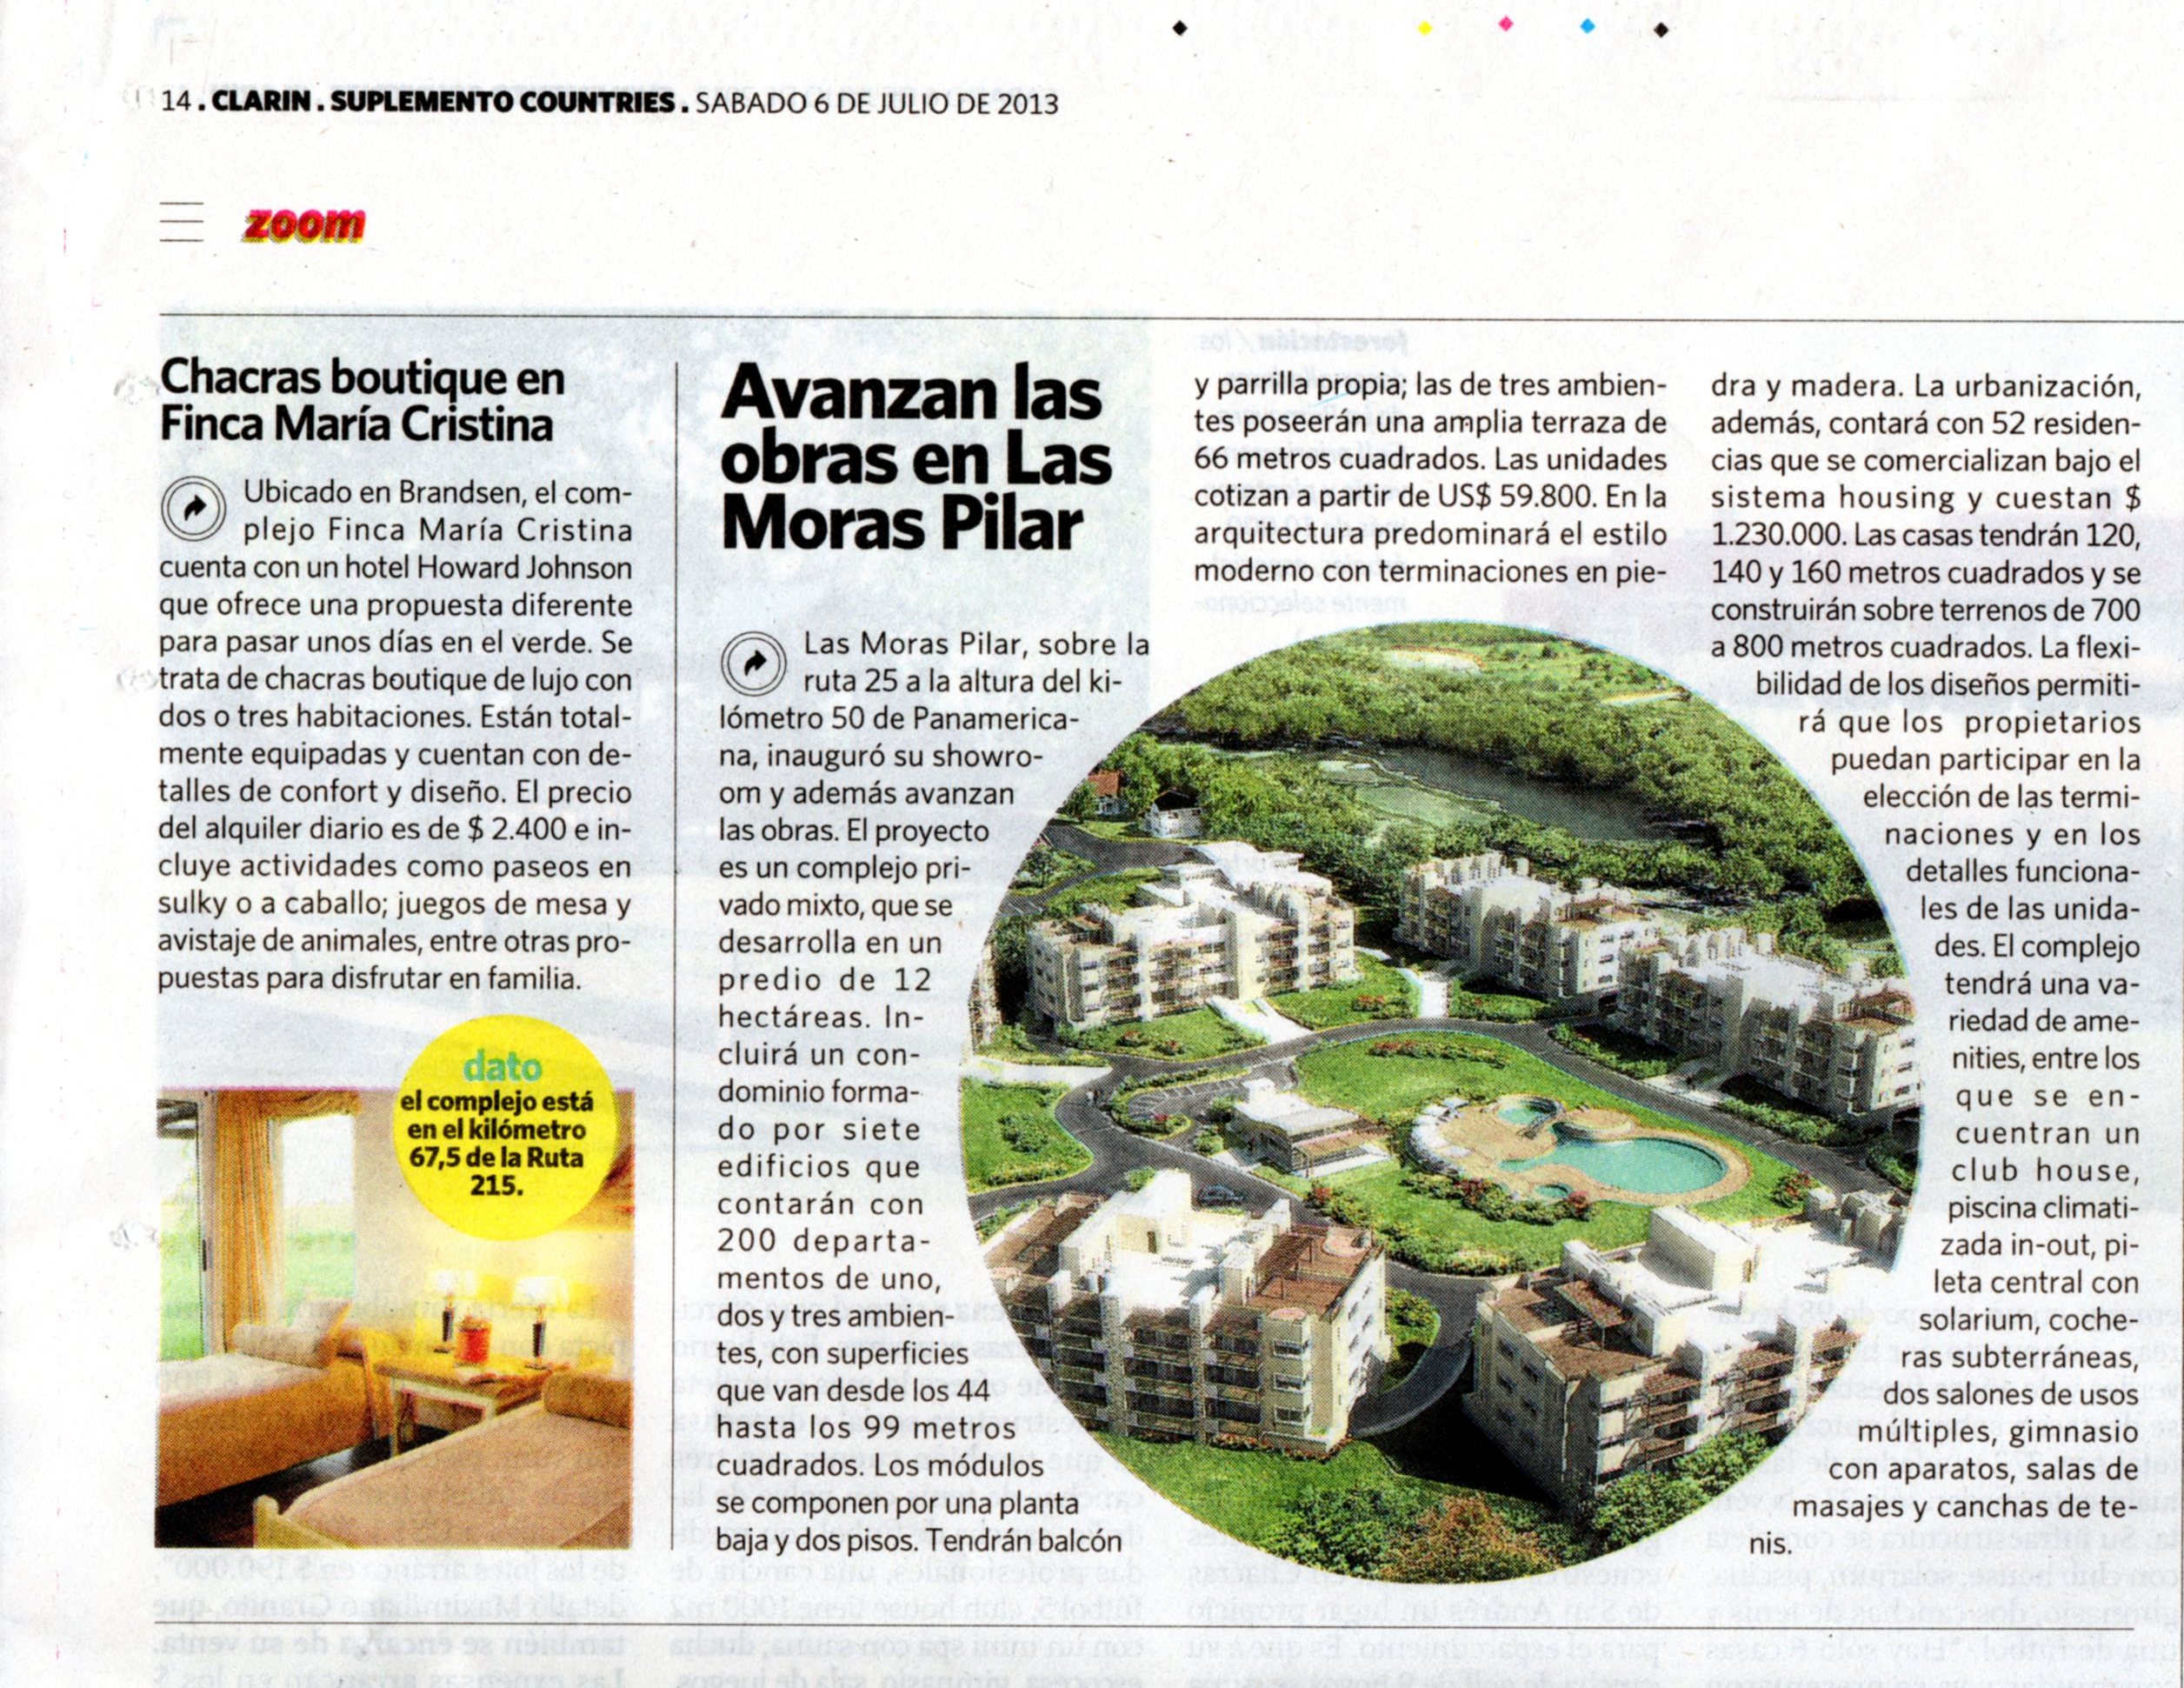 Diario Clarín Countries, 06 de julio de 2013